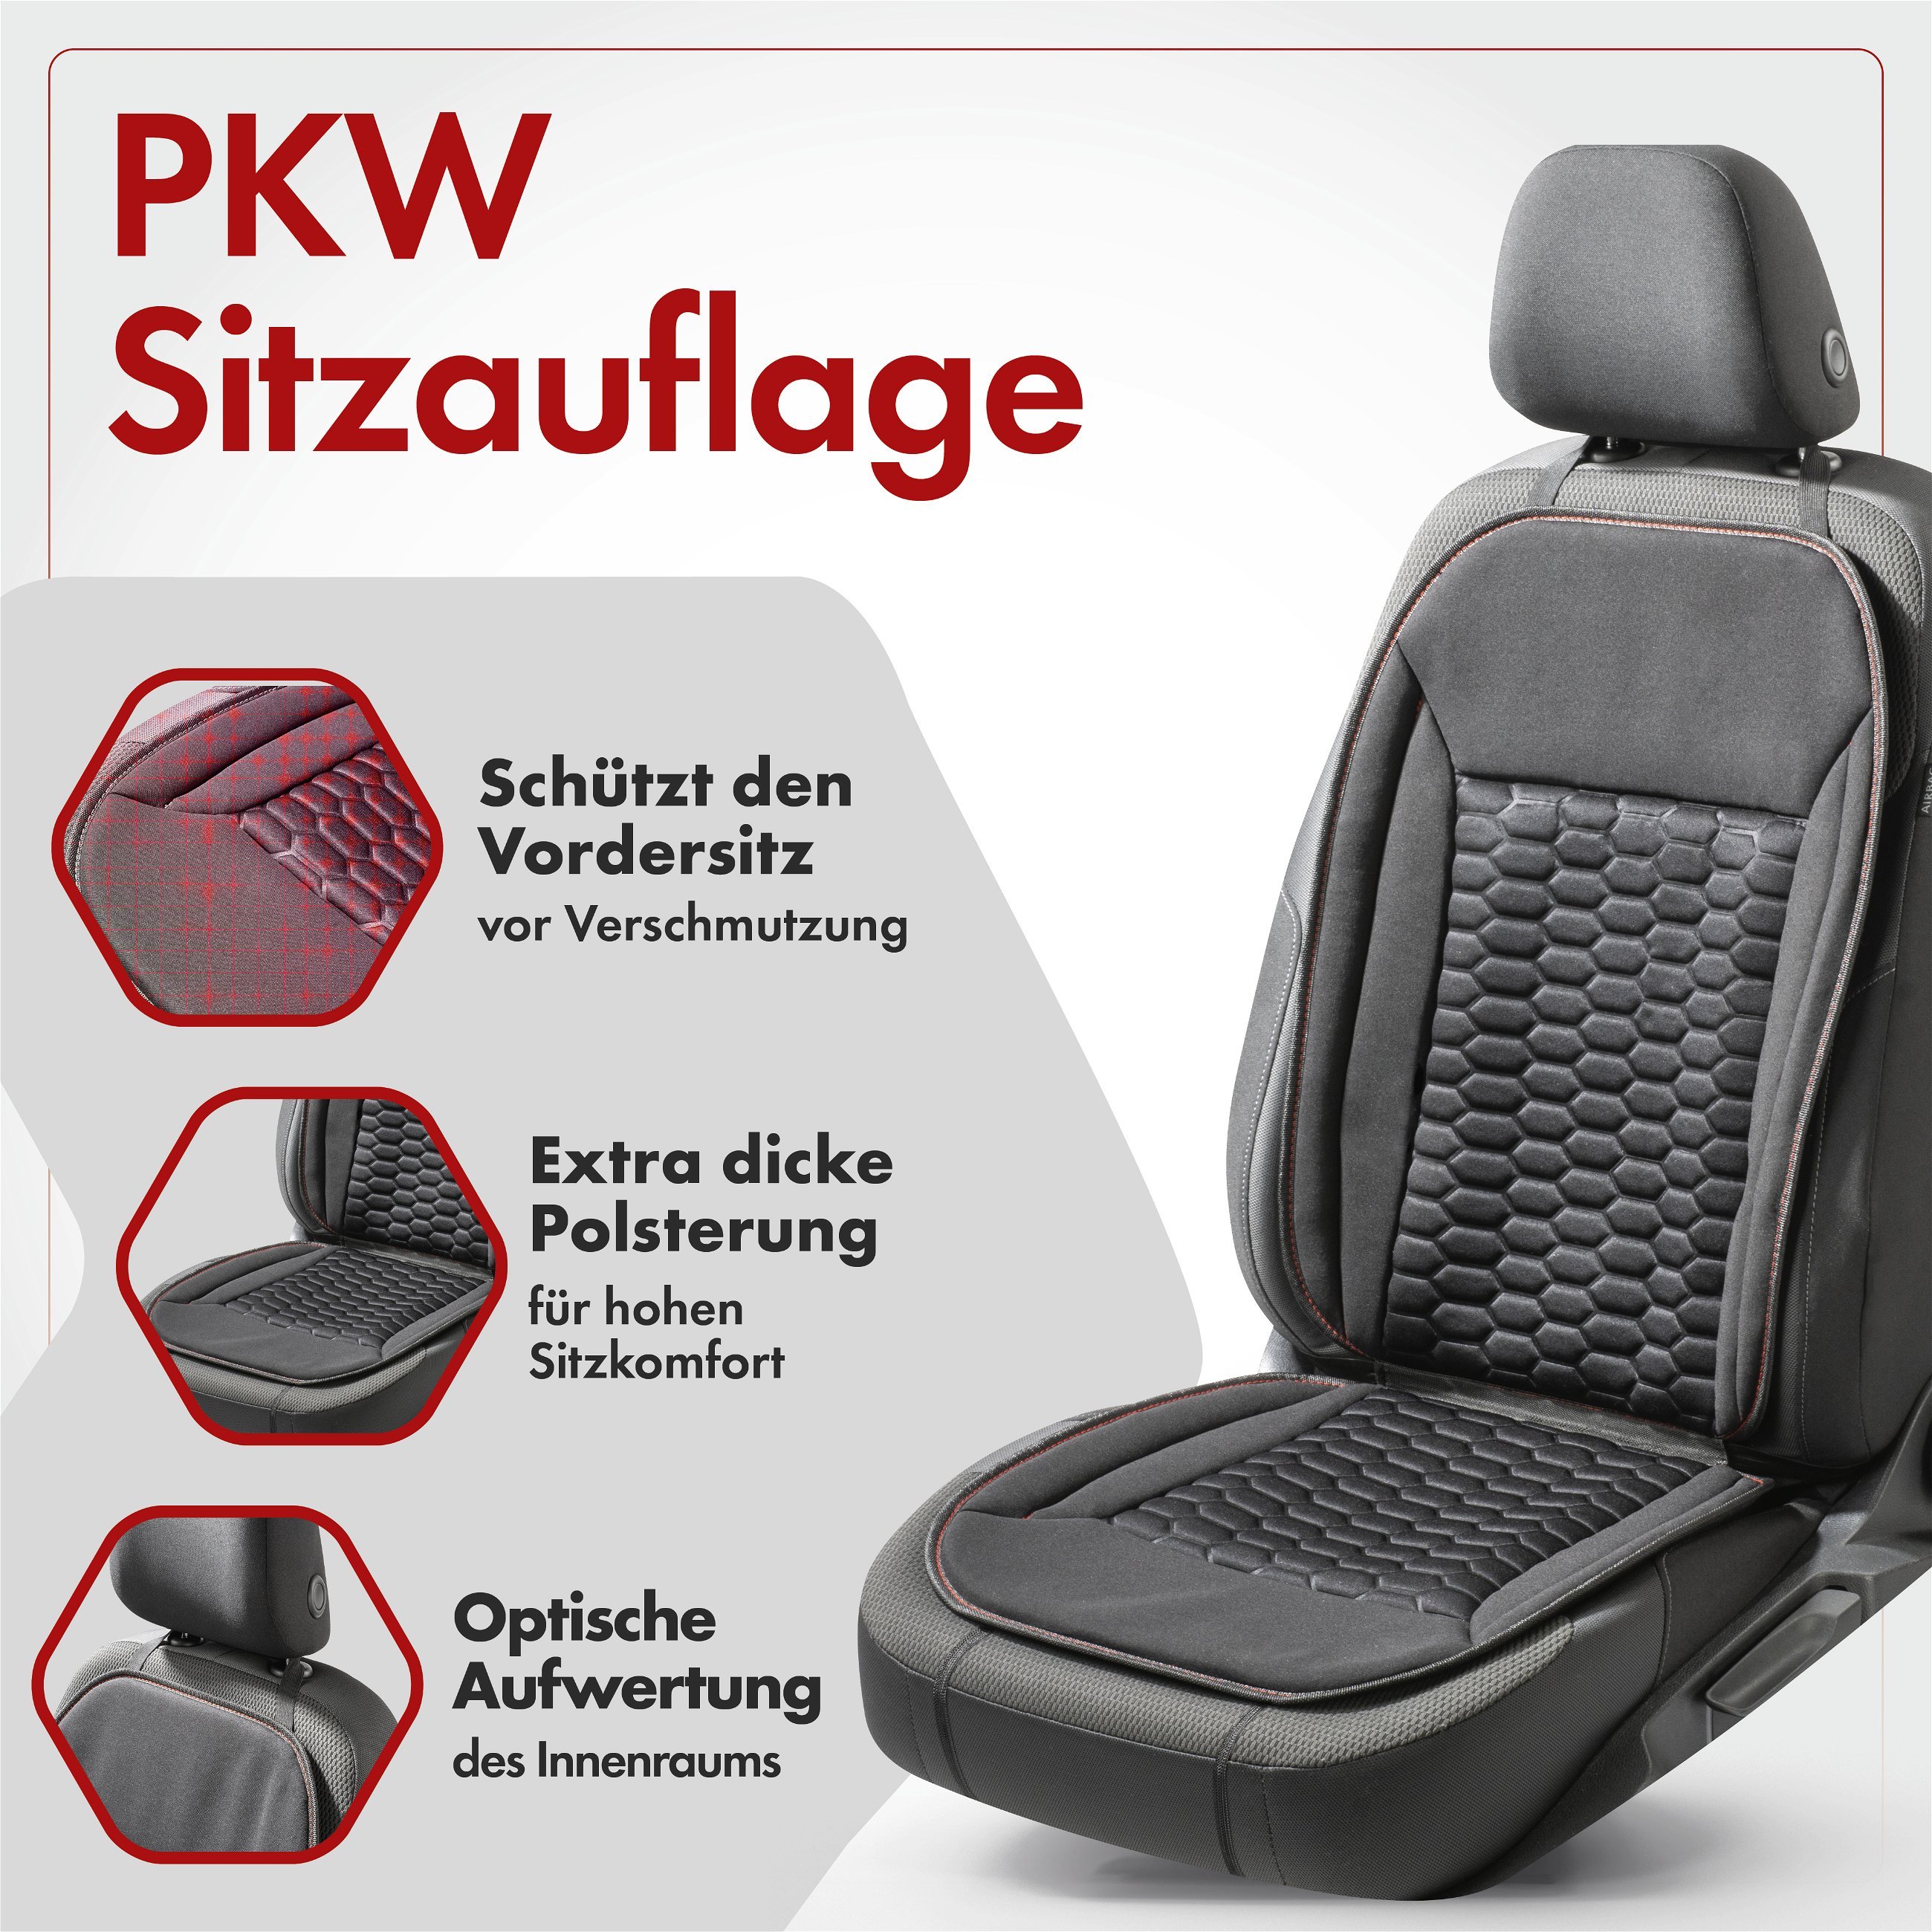 PKW Sitzauflage Valtteri, Auto-Sitzaufleger schwarz/rot